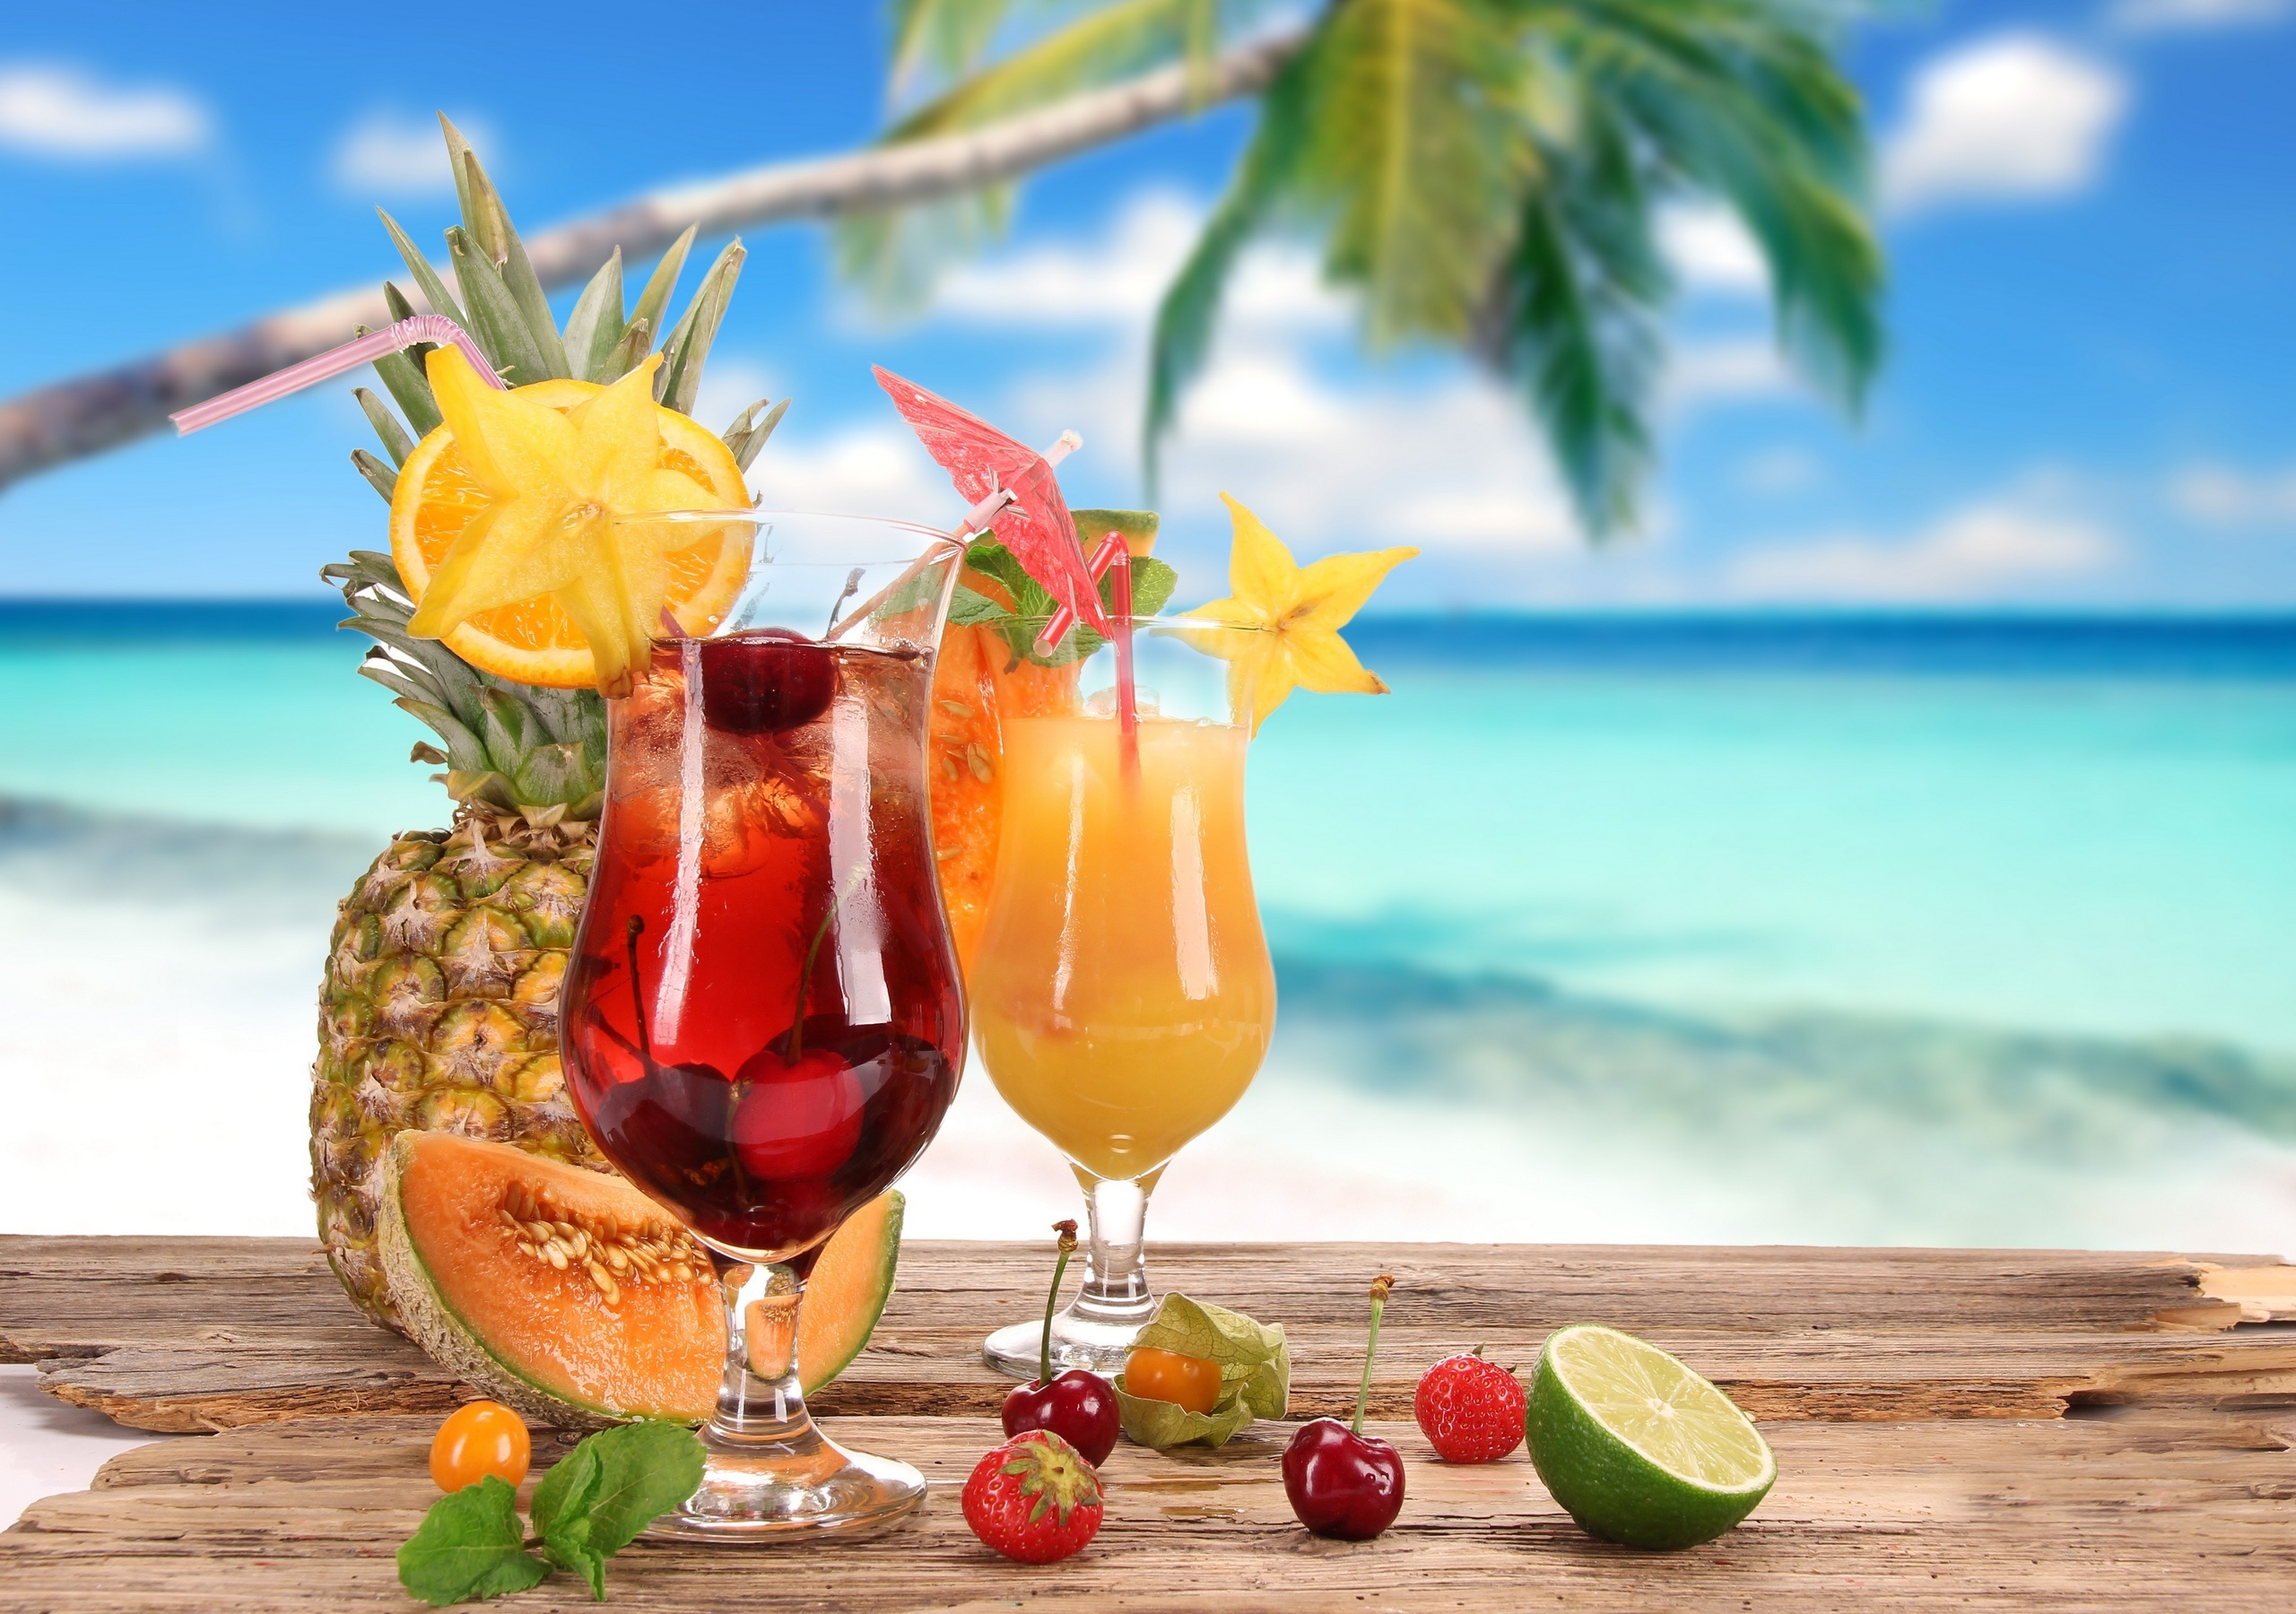 cocktail, food Image for desktop